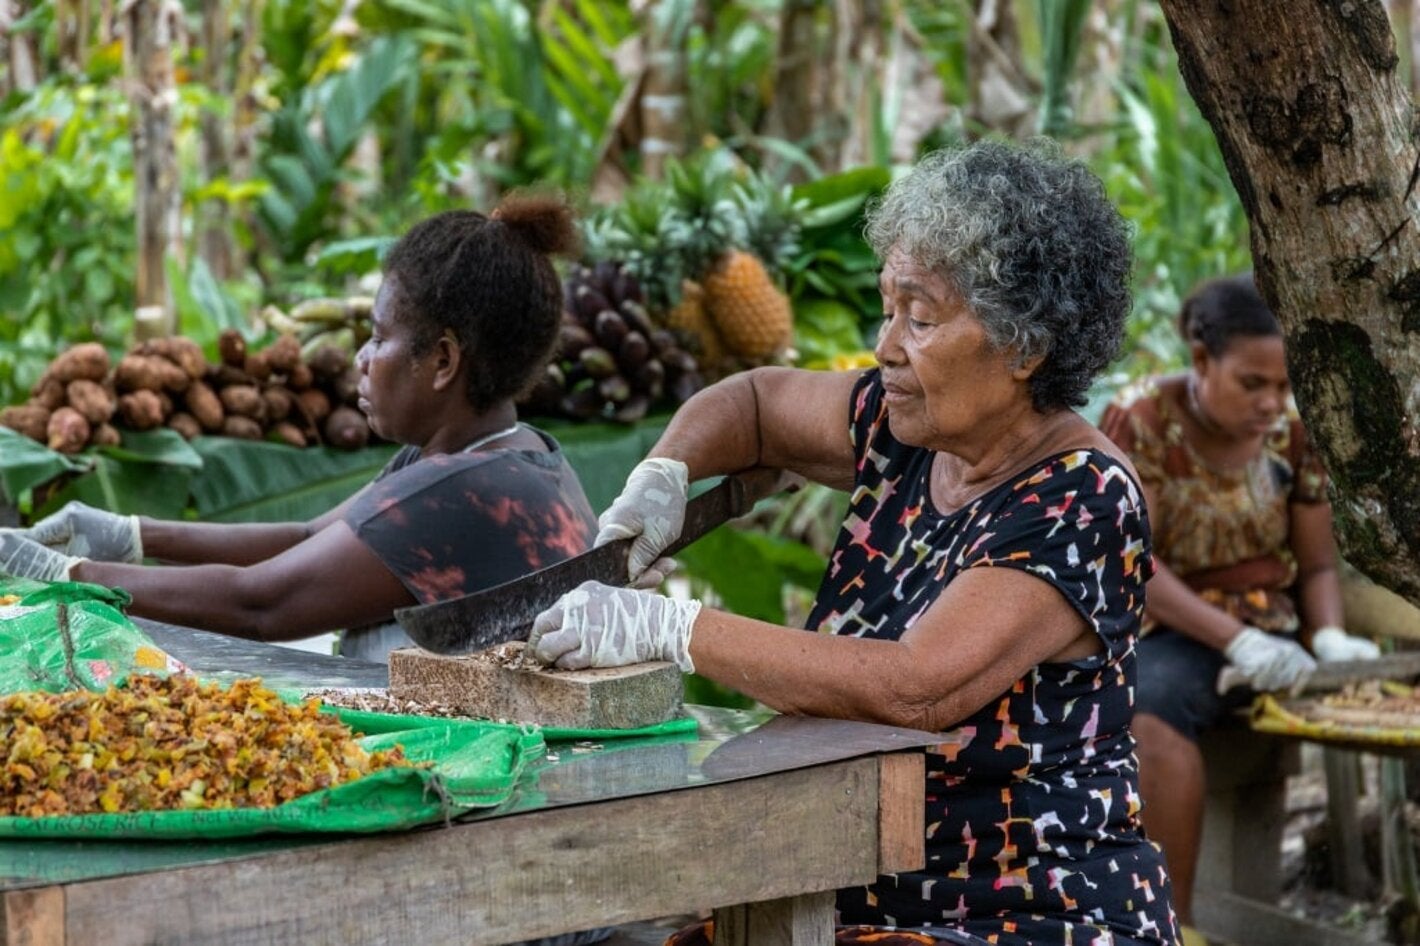 Caribeban women preparing food